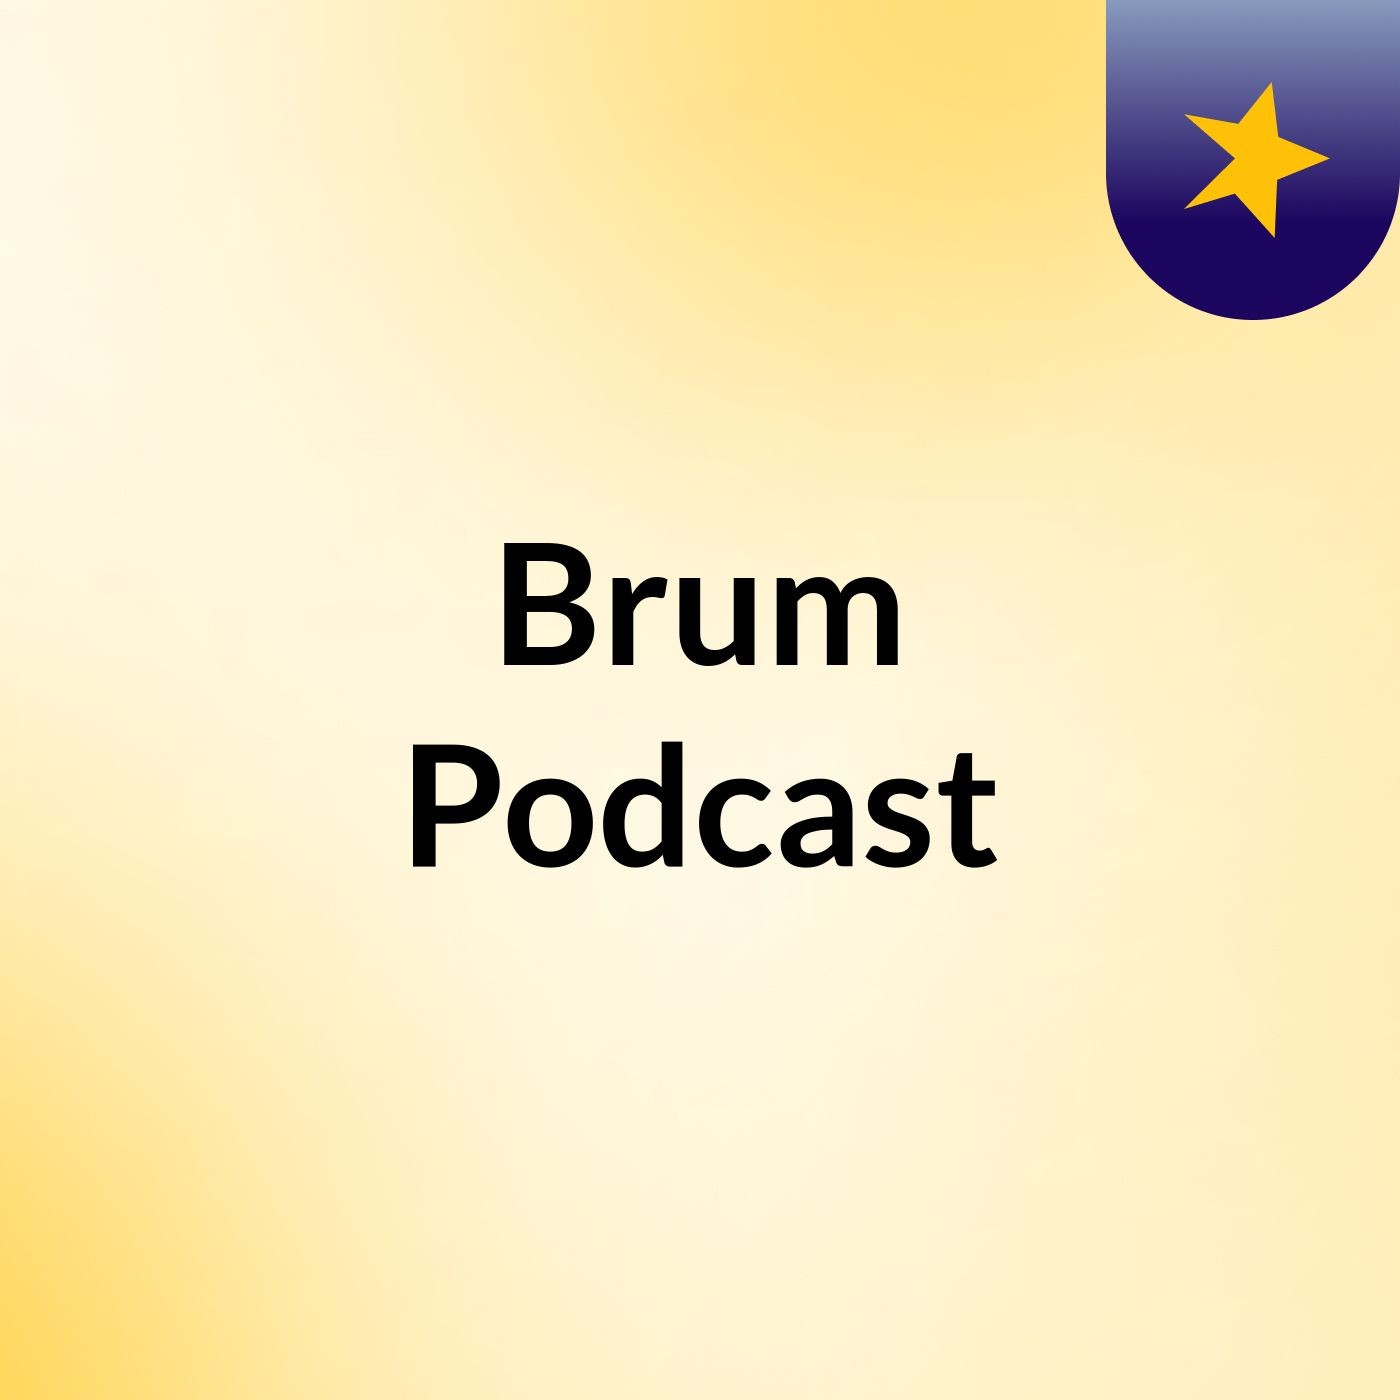 Brum Podcast